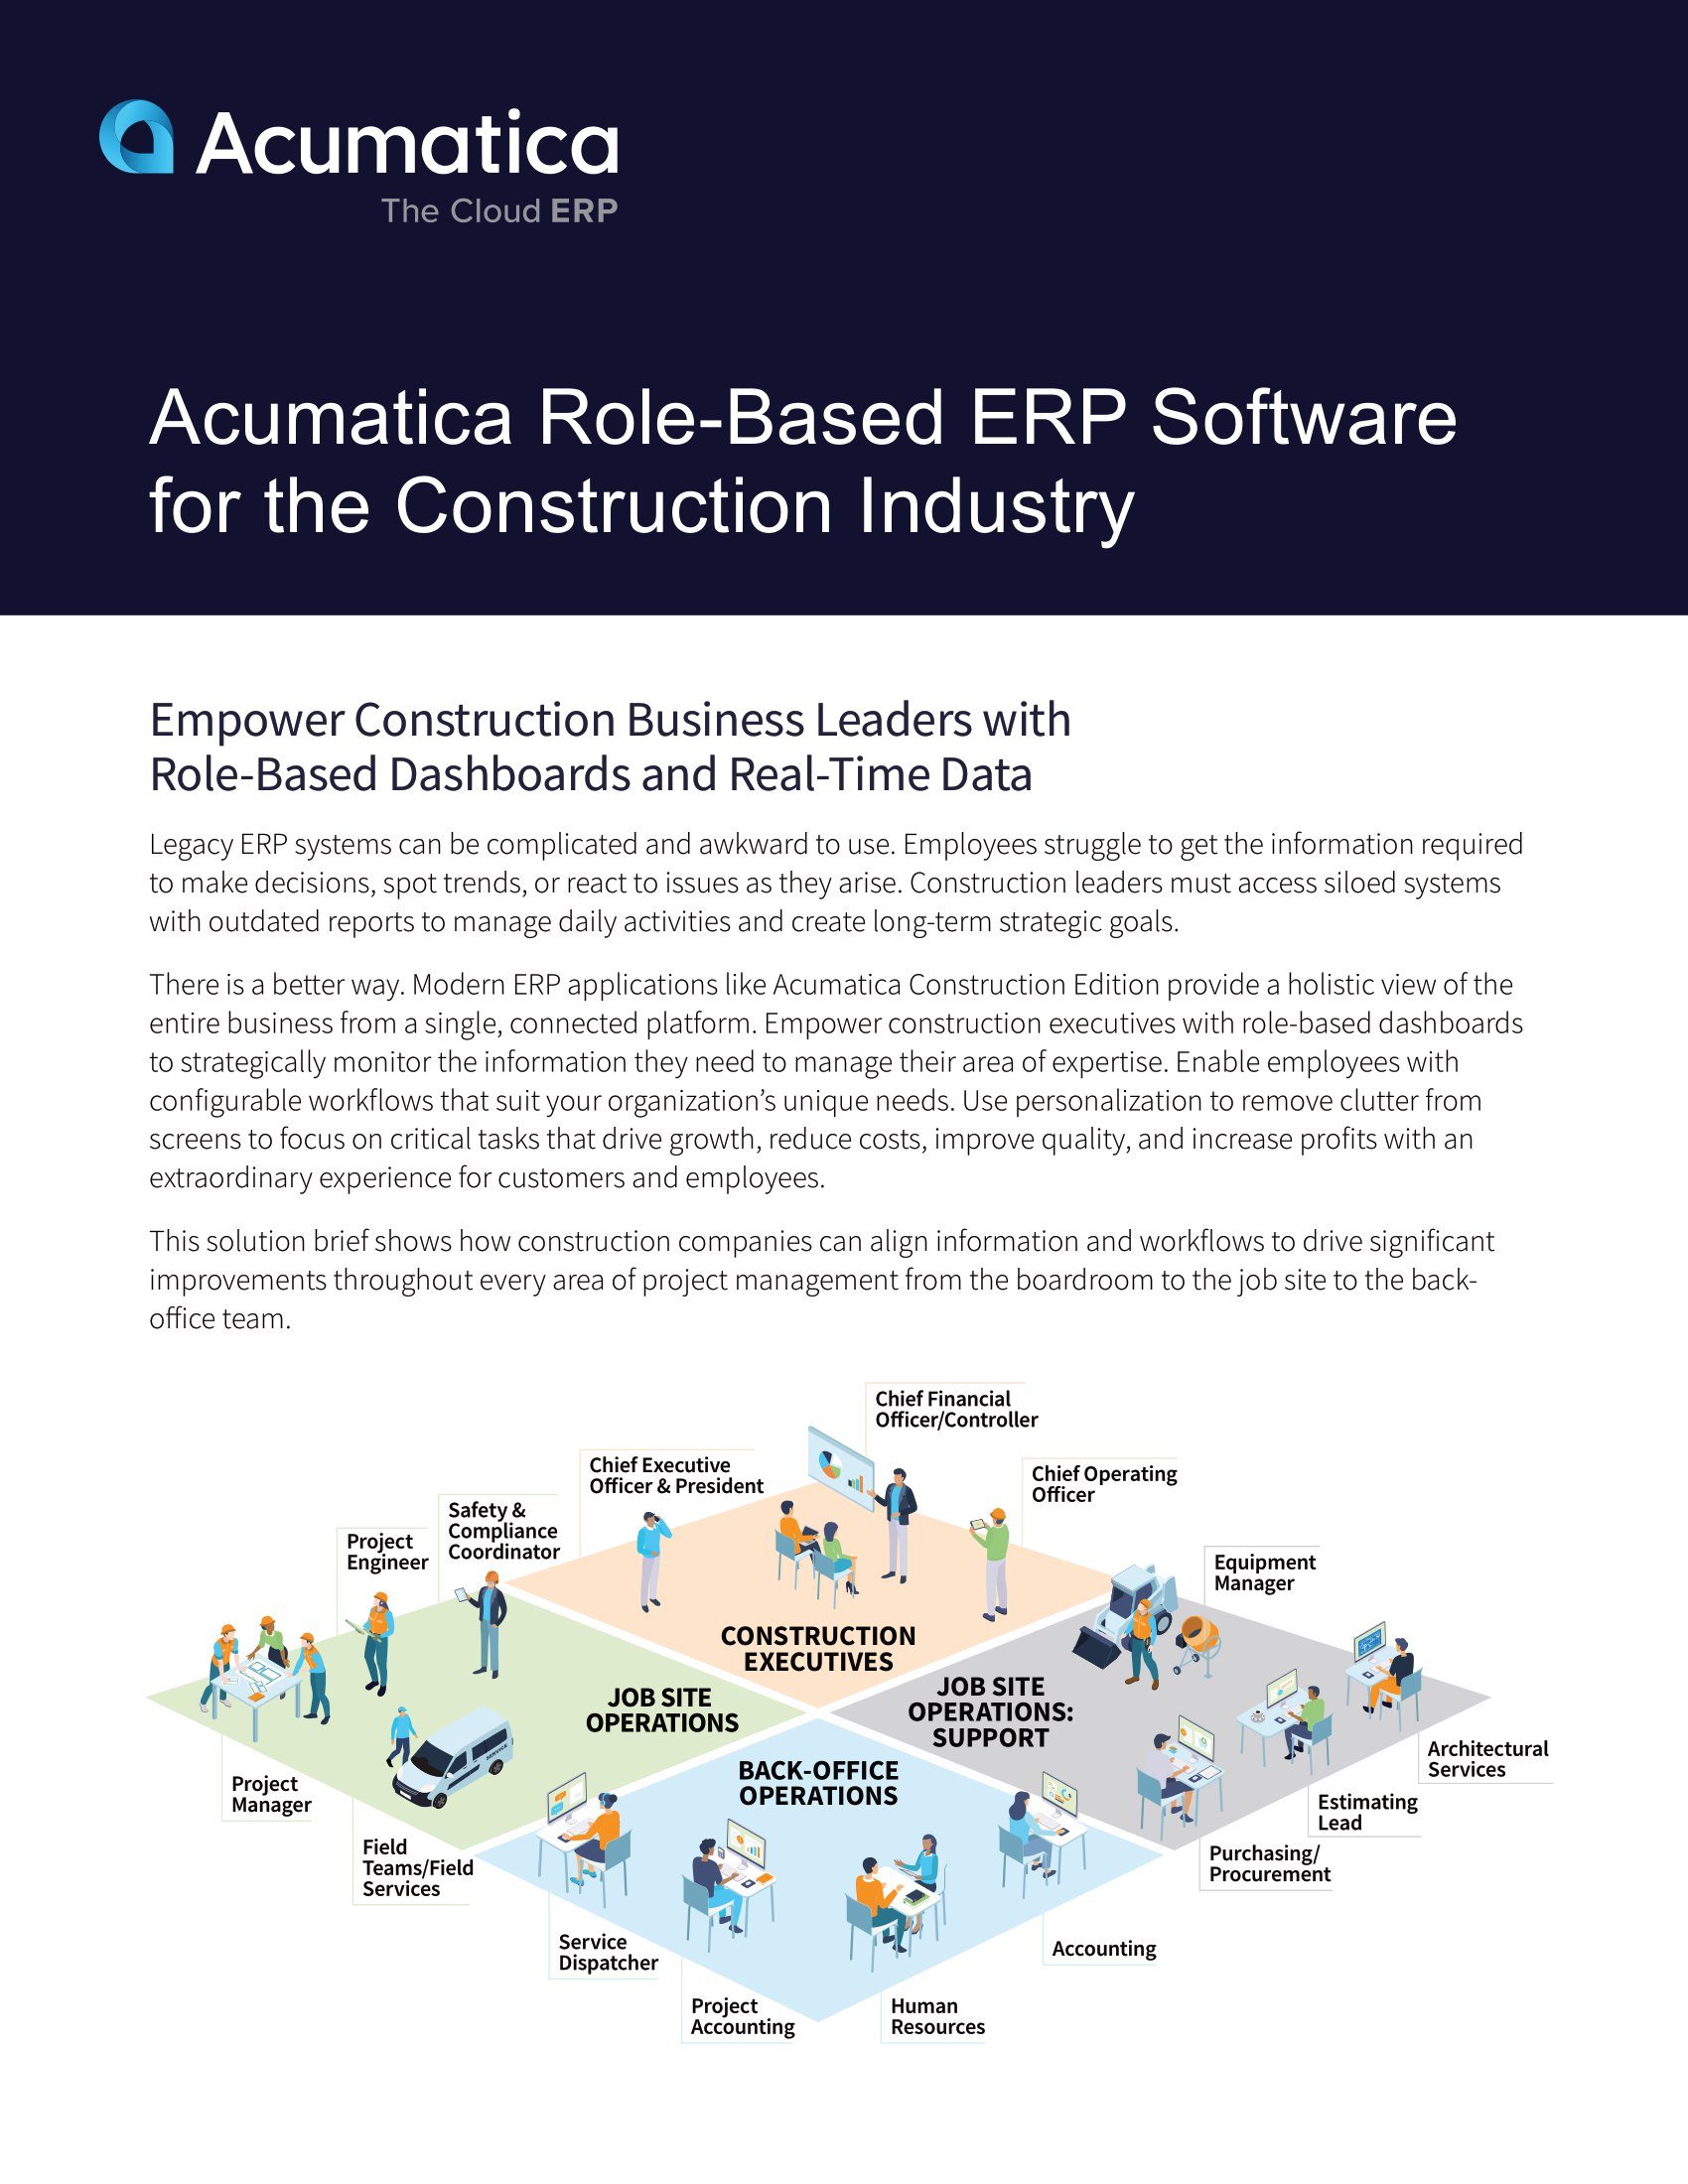 Une seule plateforme ERP pour des rôles multiples dans le secteur de la construction